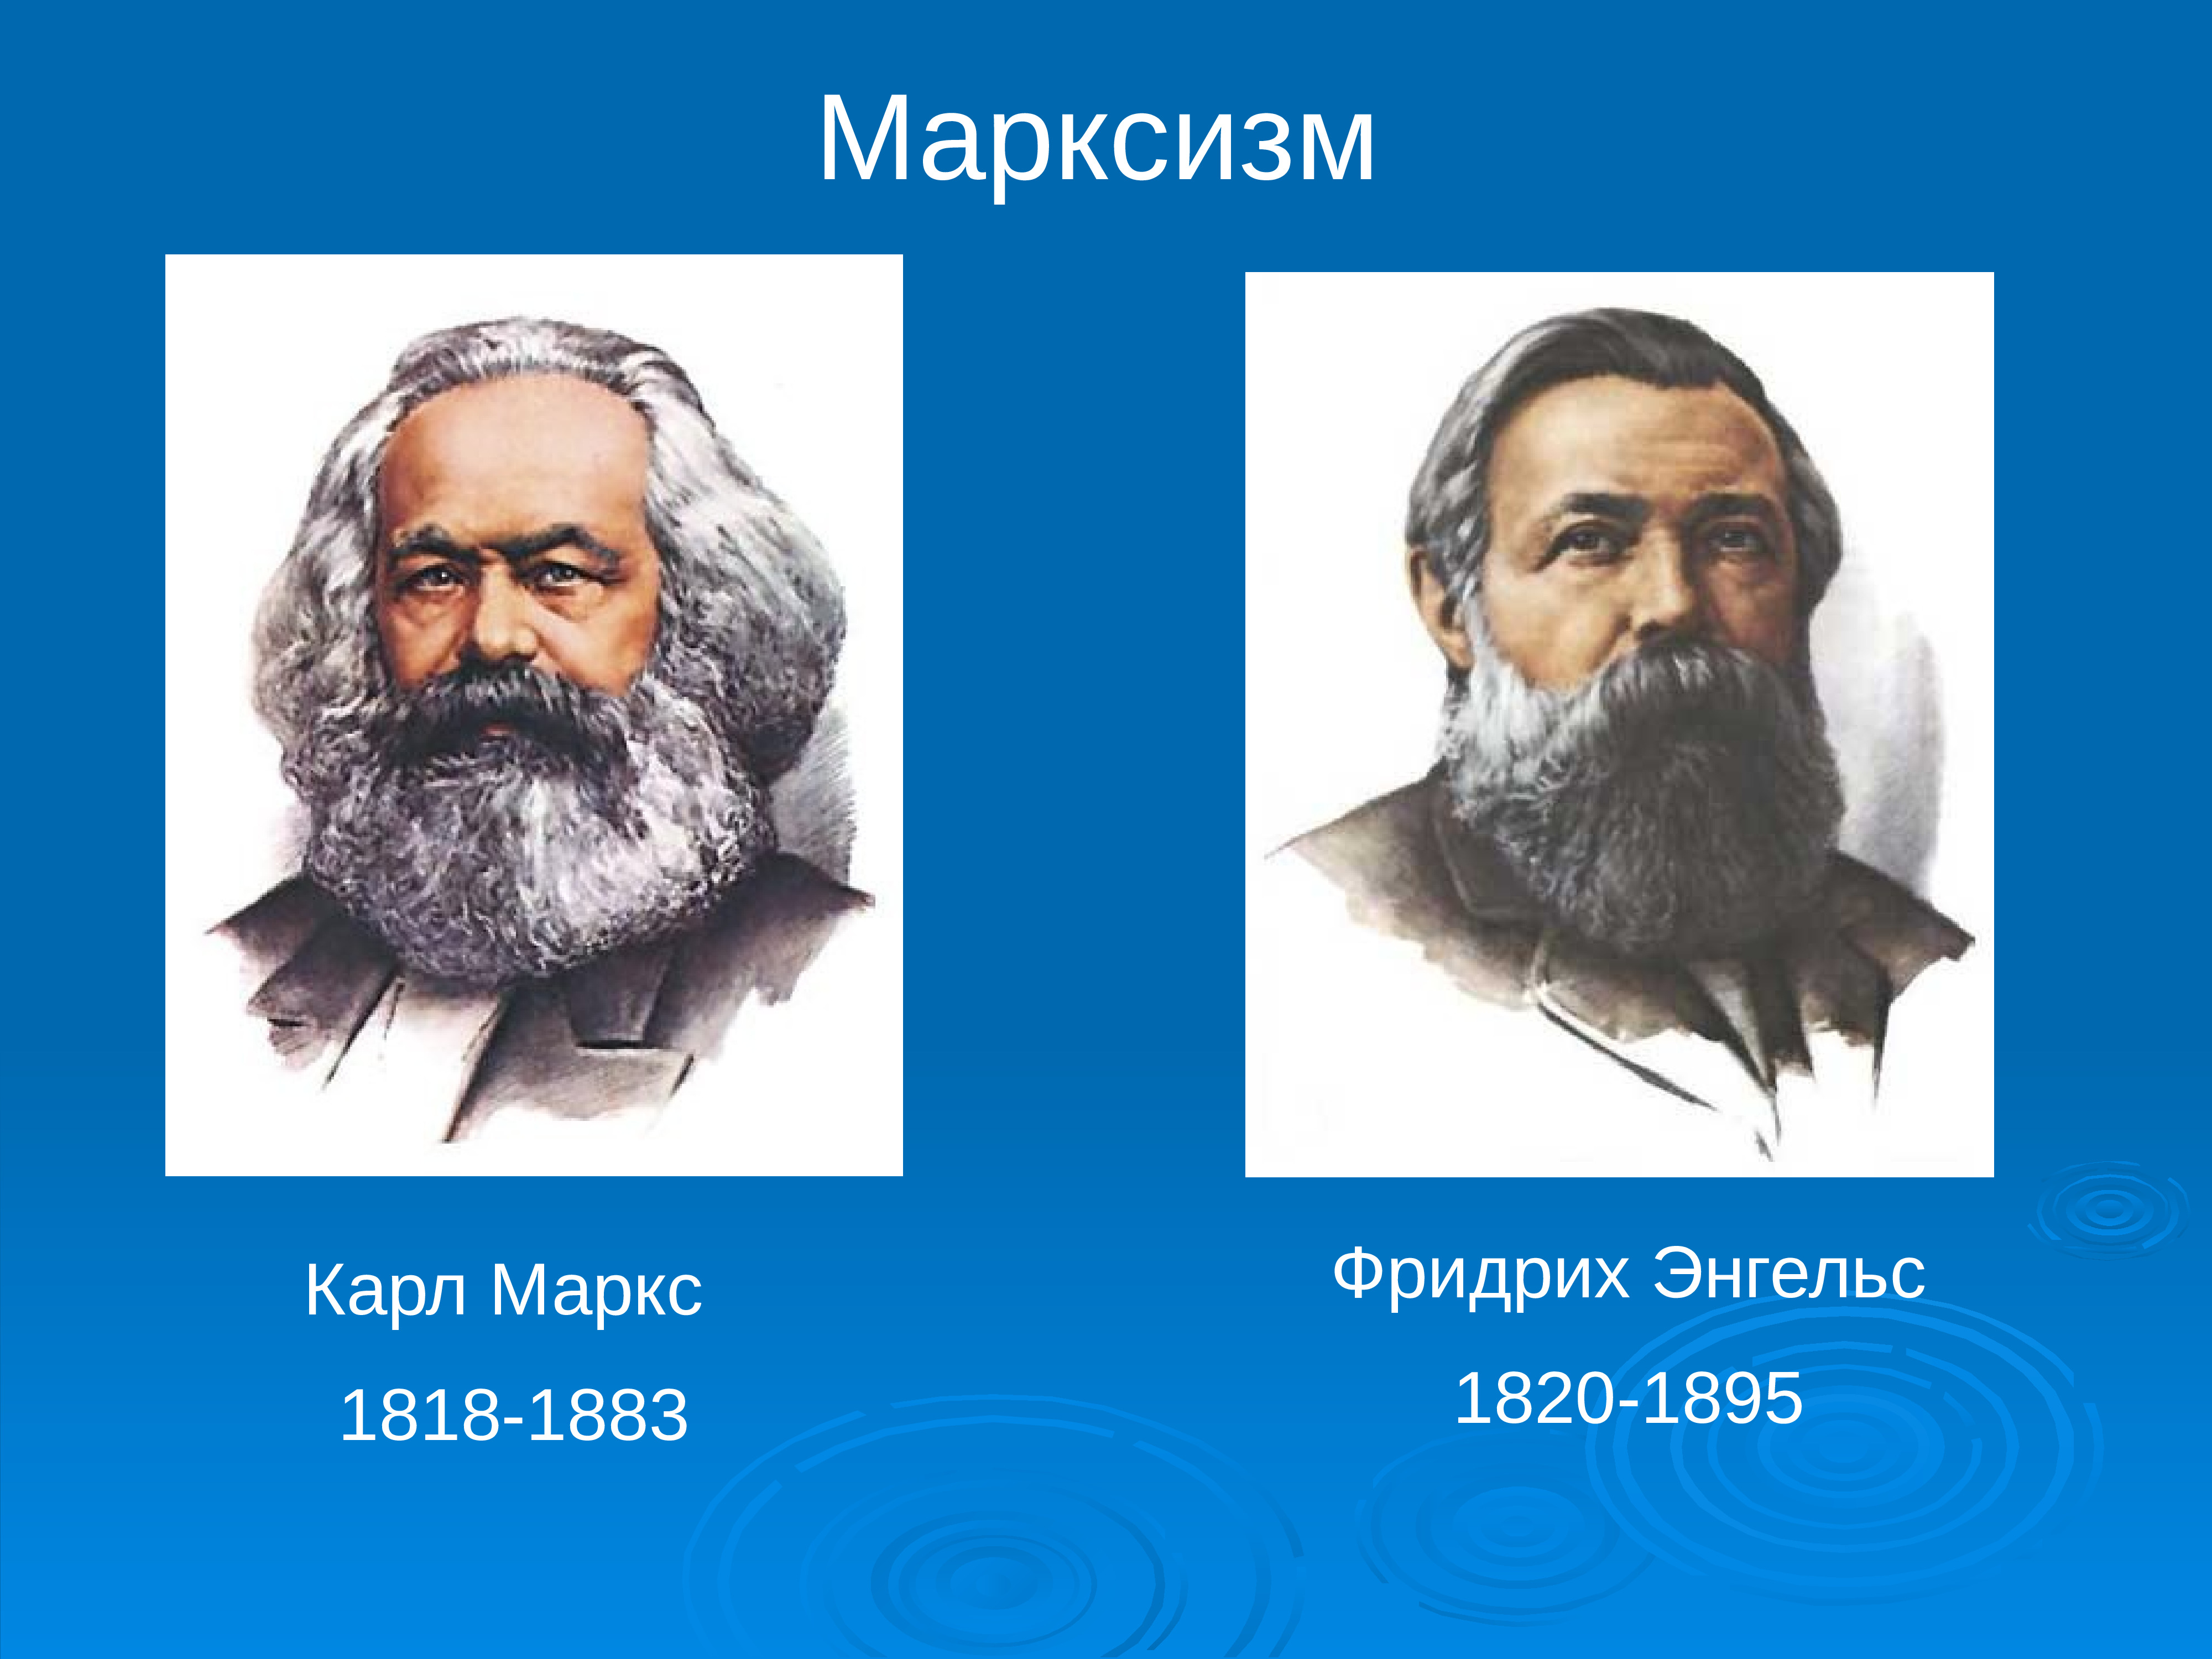 Карл Маркс (1818-1883) и Фридрих Энгельс (1820-1895)